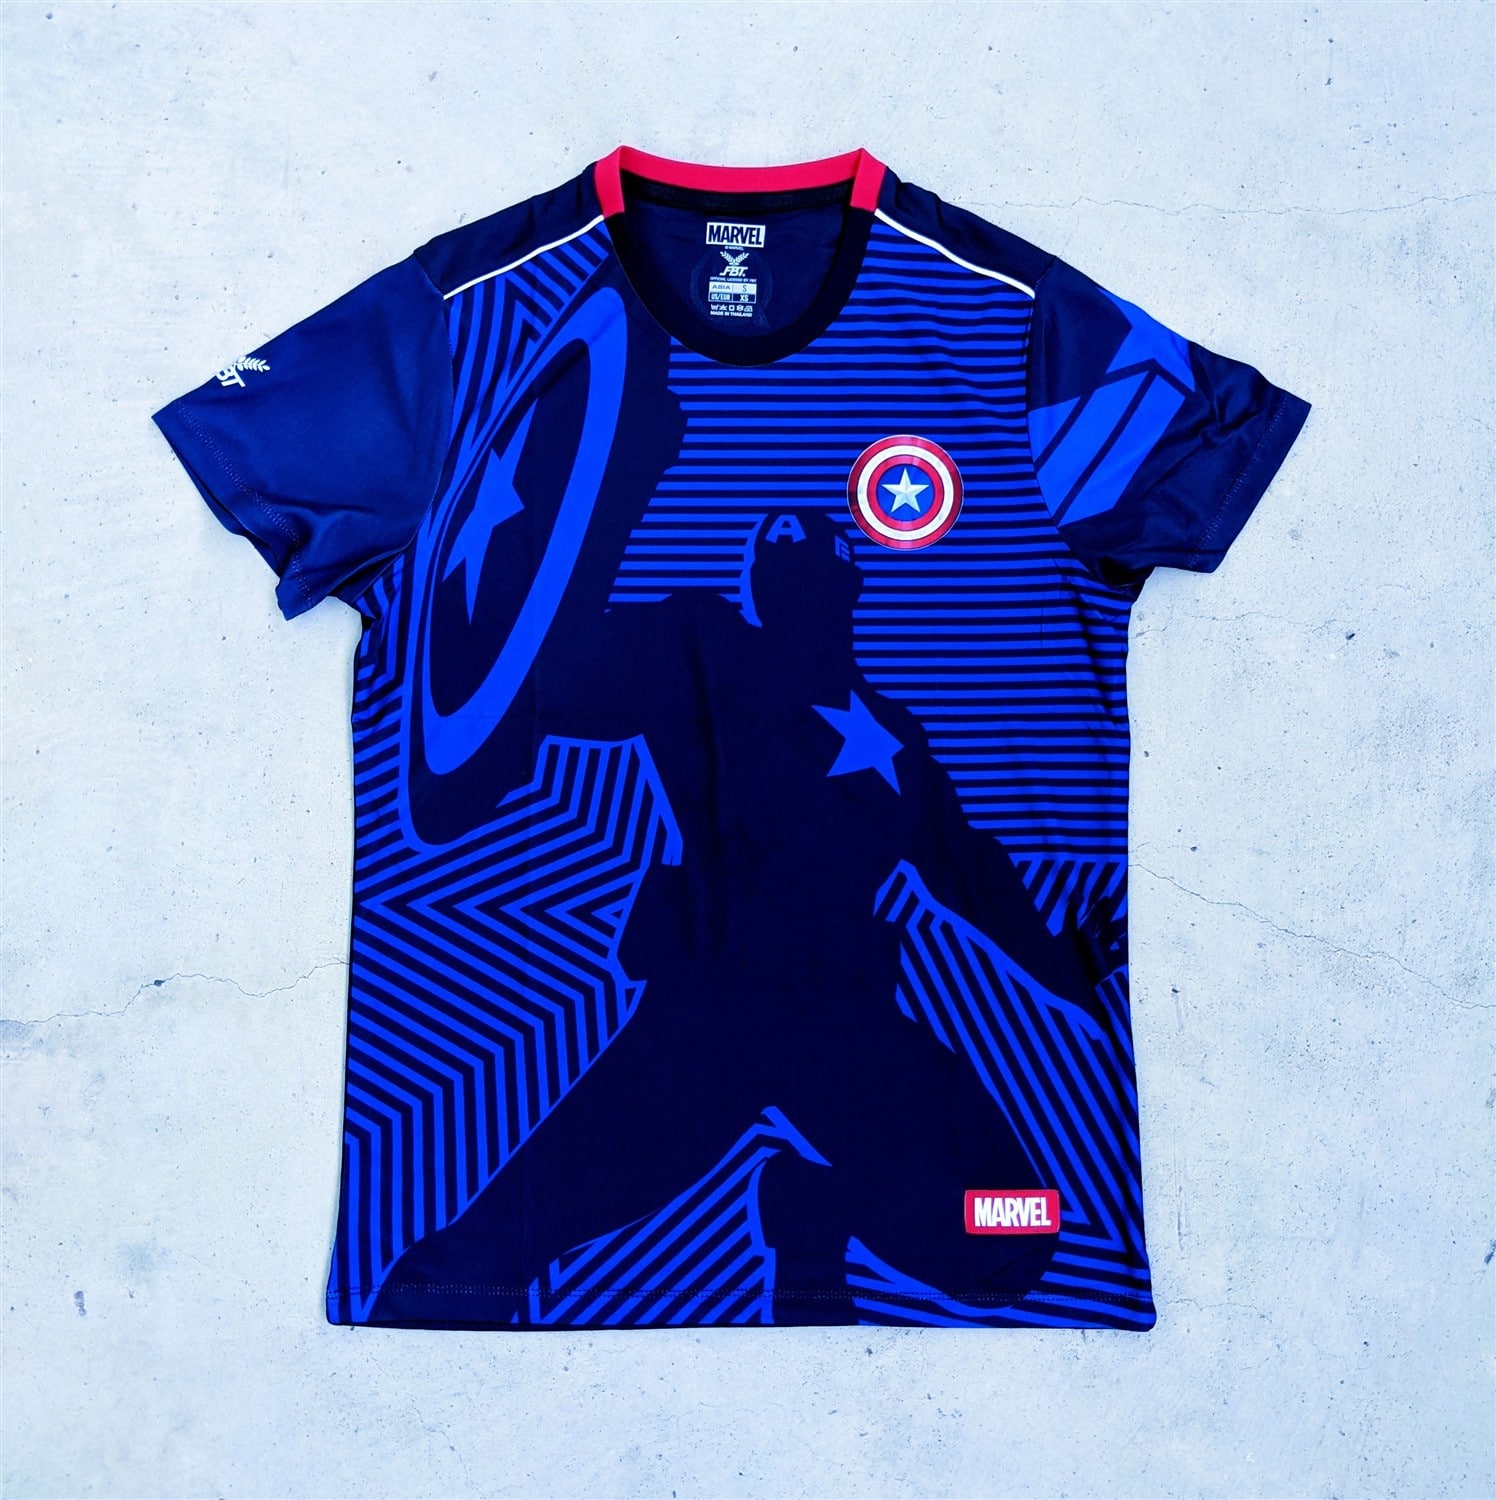 Marvel x FBT football jerseys - Captain America